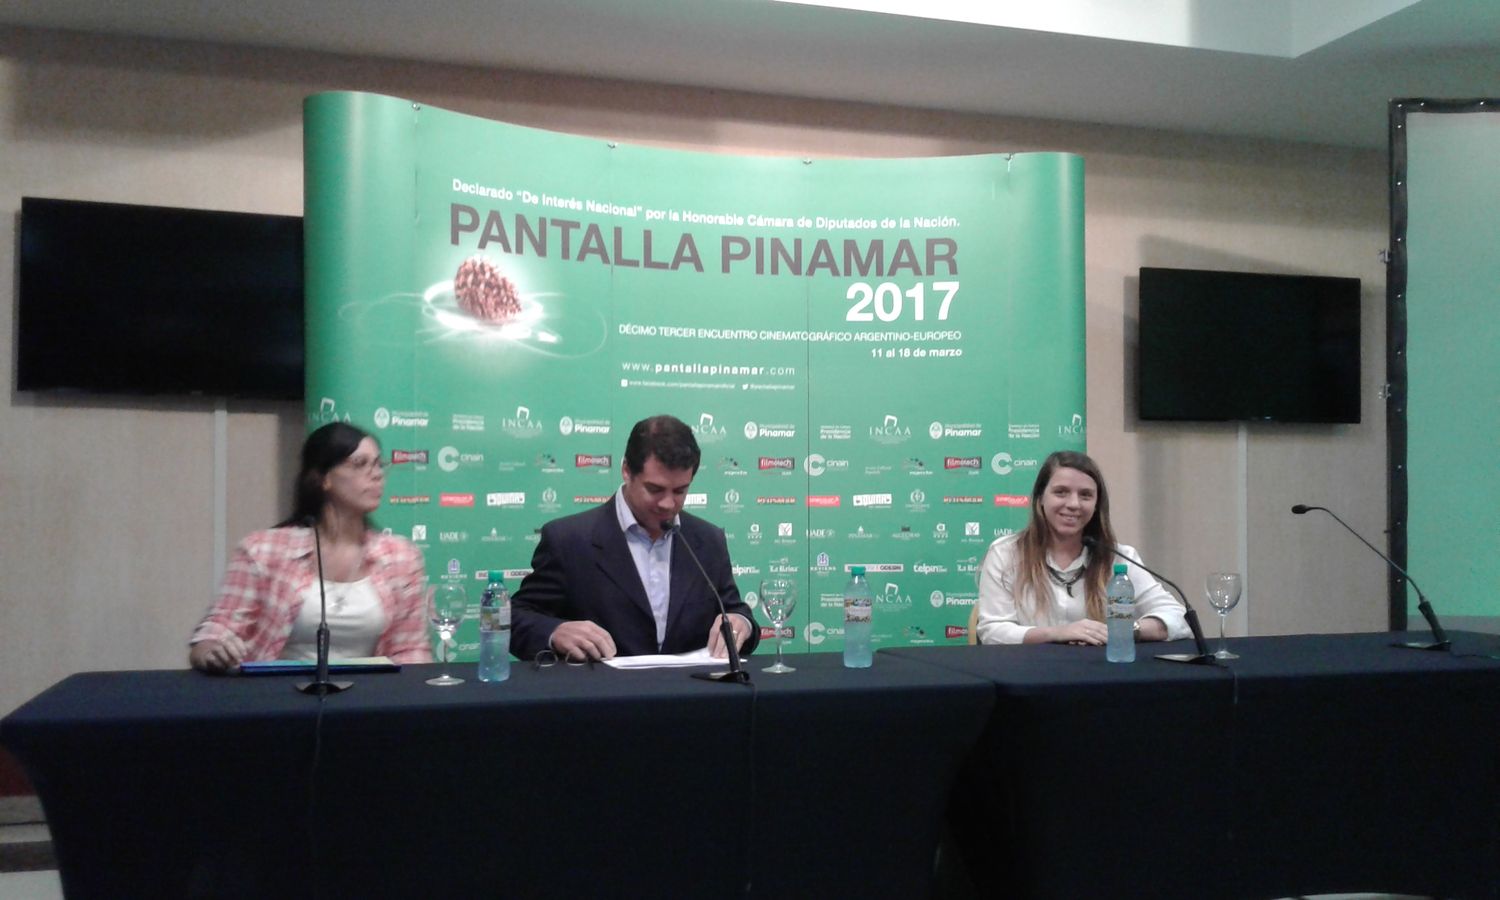 Pantalla Pinamar 2017 día 2: Risas, excelente cine y un idioma español que no se entiende